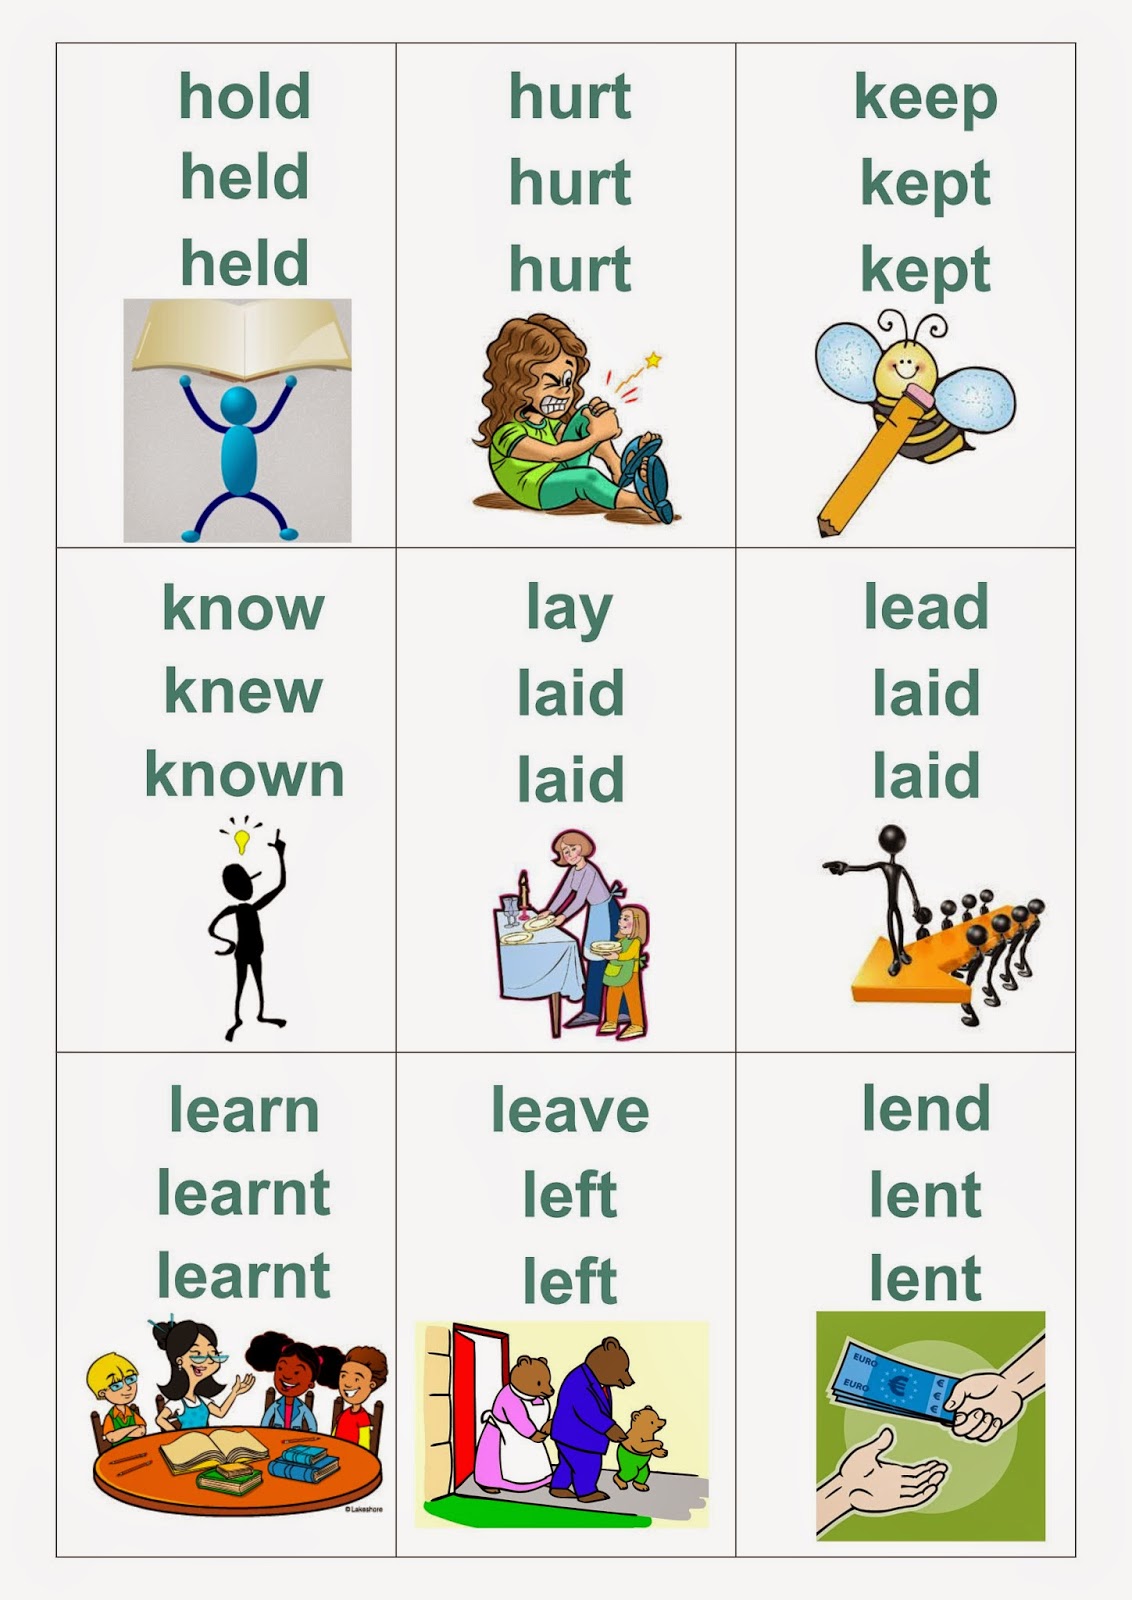 Как запомнить английские глаголы. Карточки Irregular verbs на английском. Карточки по английскому неправильные глаголы. Карточки для изучения неправильных глаголов английского языка. Неправильные глаголы английского языка в картинках.